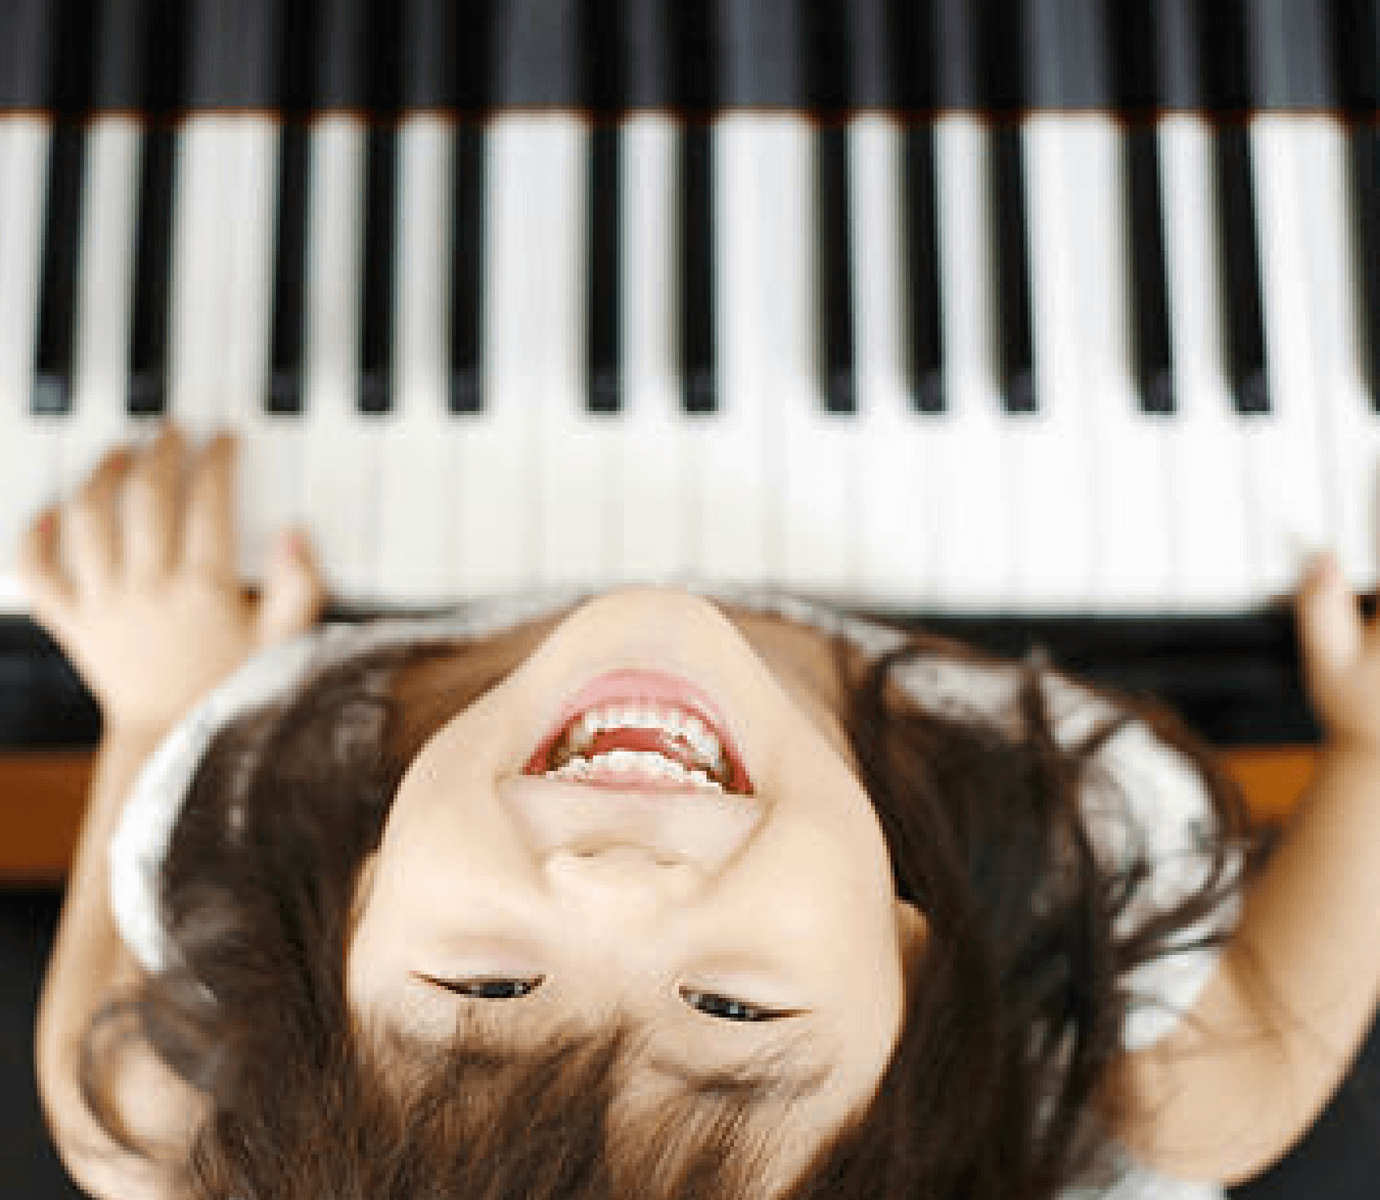 Musica e bambini come scegliere la scuola giusta Yamaha